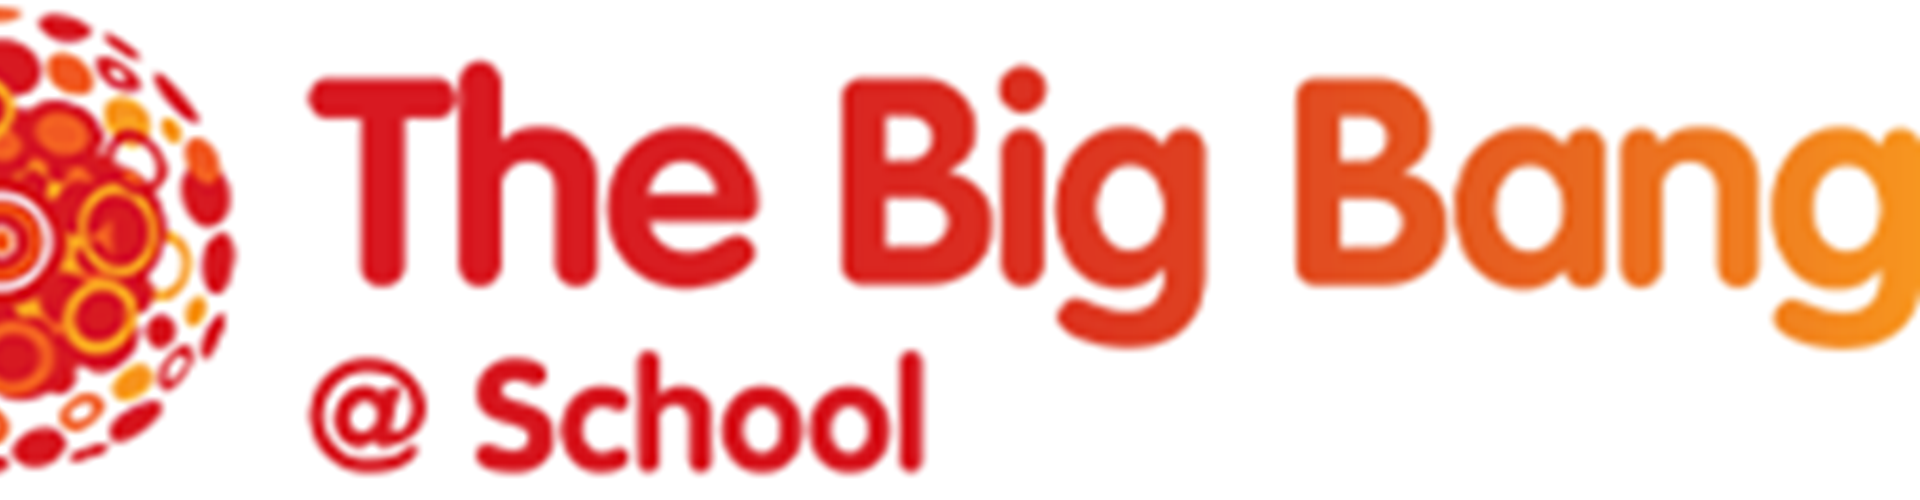 The Big Bang @ School